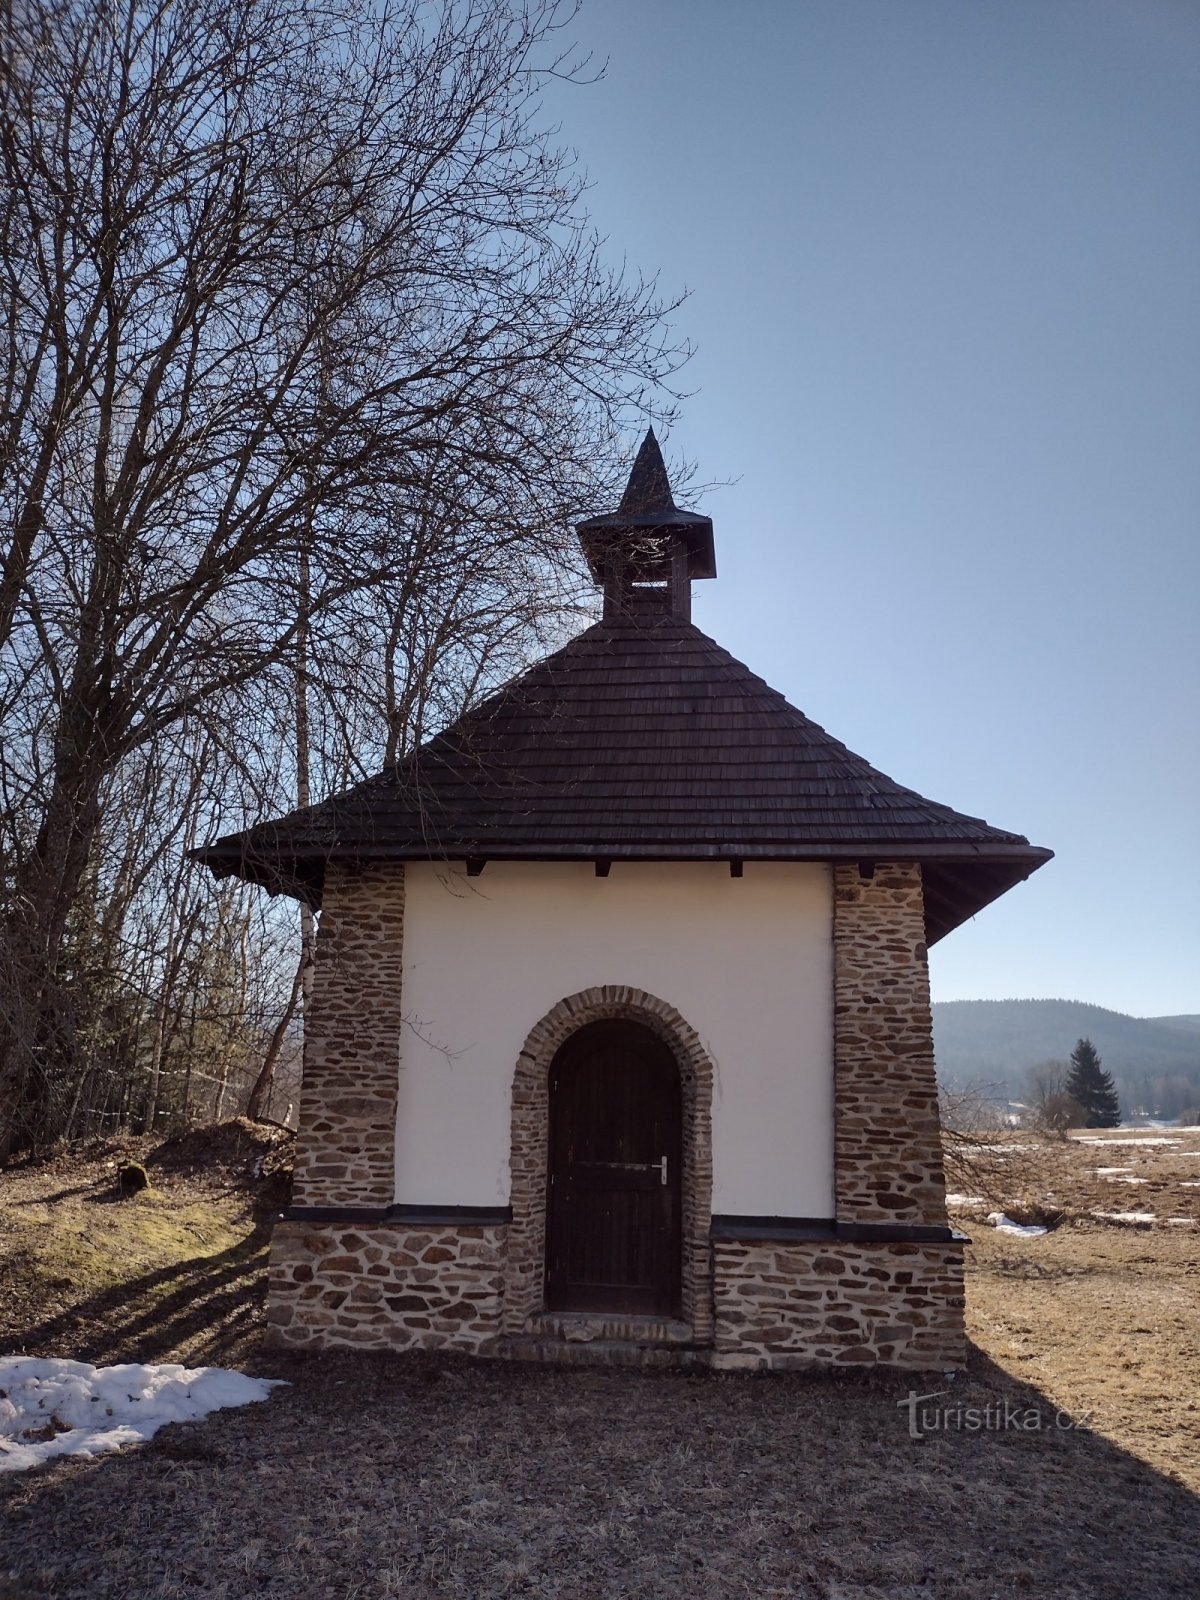 Srní - Mechov - O ponto de vista de Klostermann - Srní